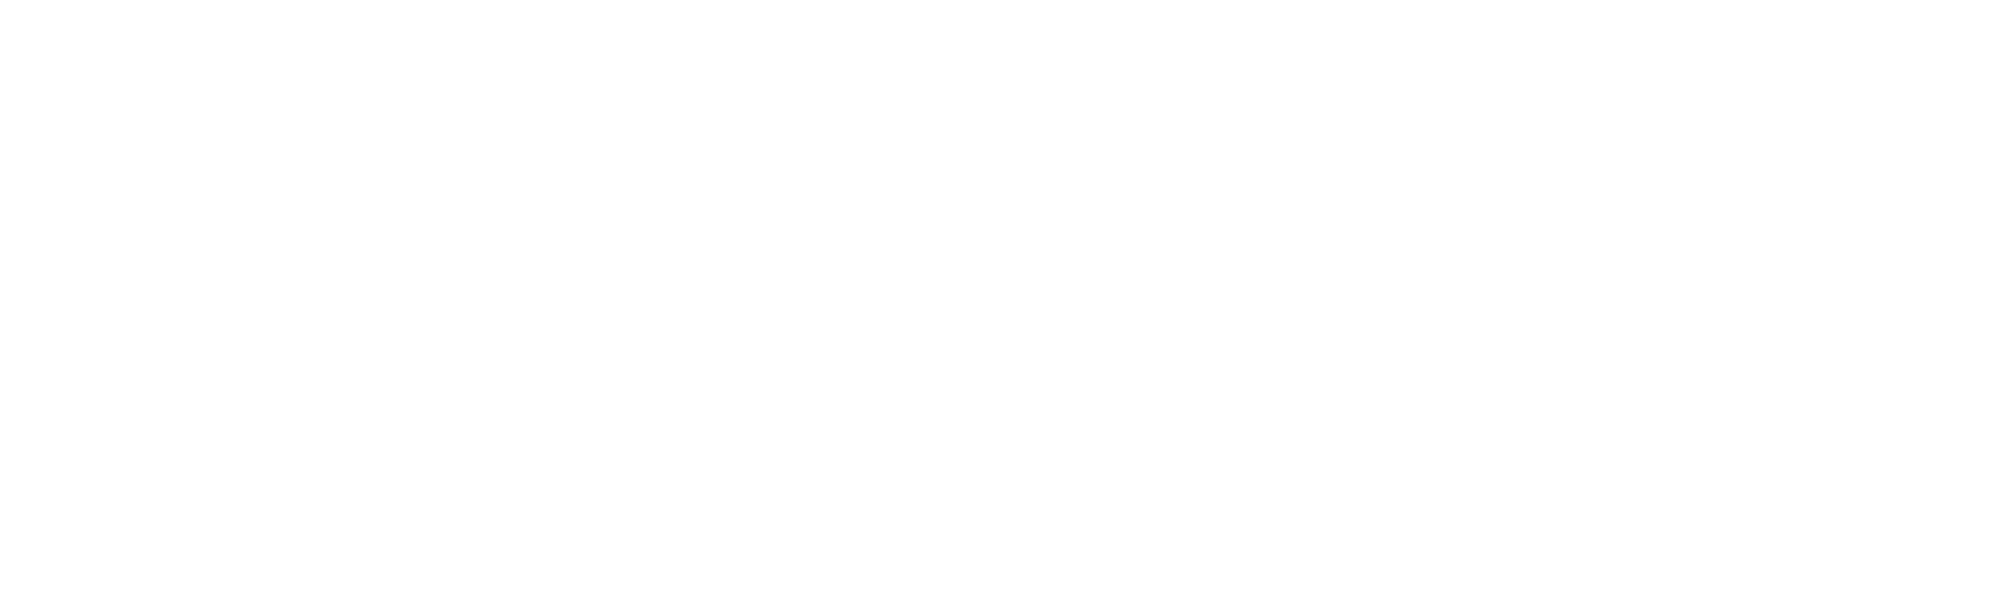 Nova Gorica e Gorizia, Capitale europea della cultura transfrontaliera 2025